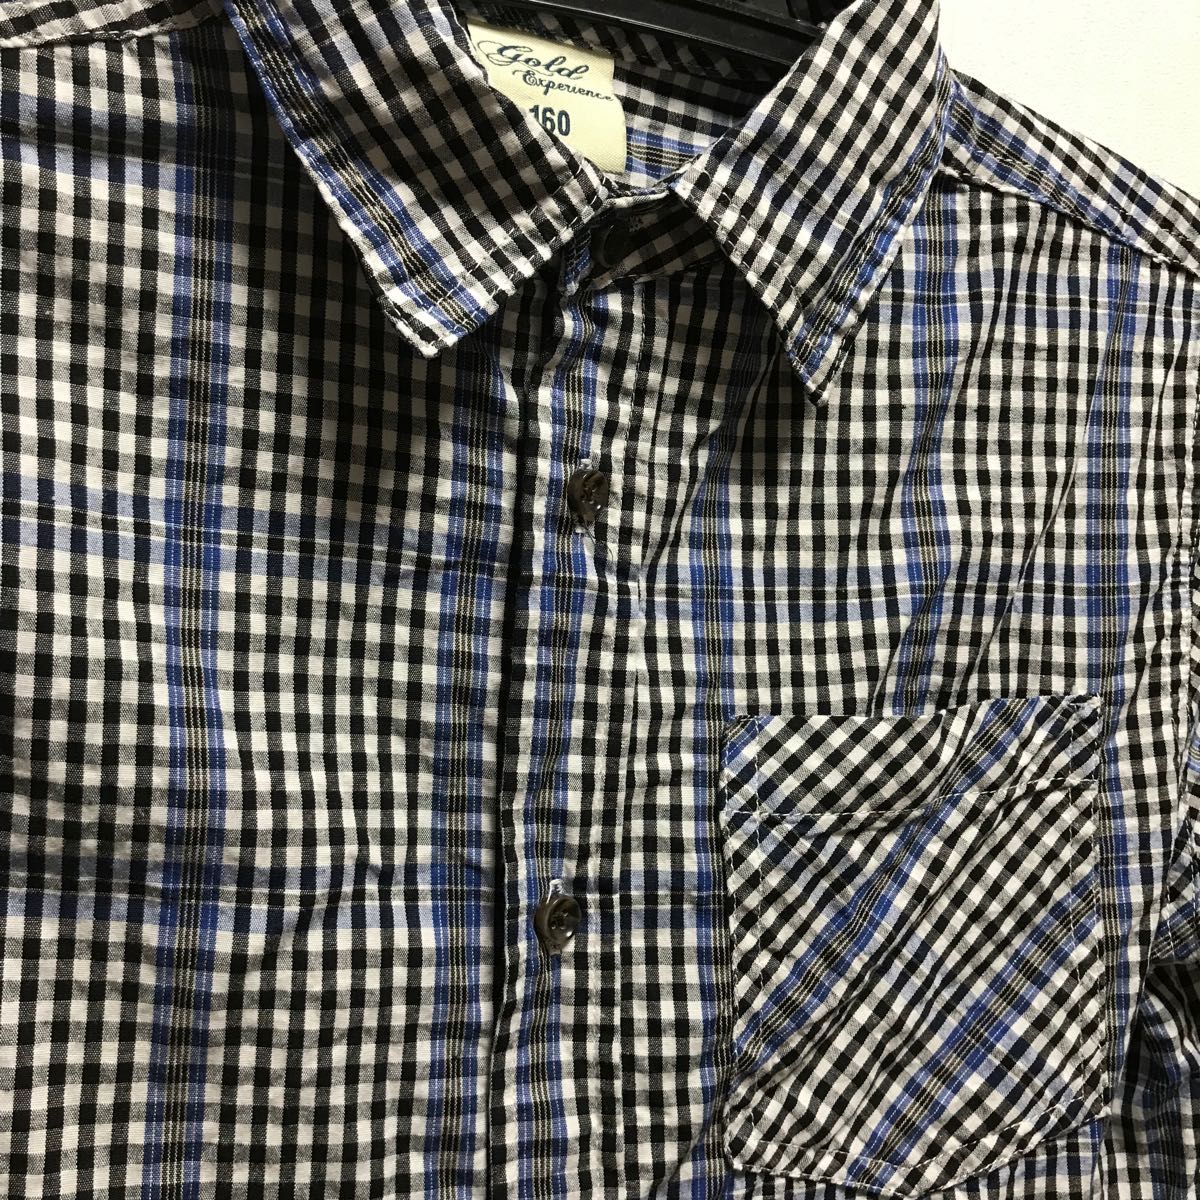 160サイズ 青×黒 ギンガムチェック ボタンシャツ